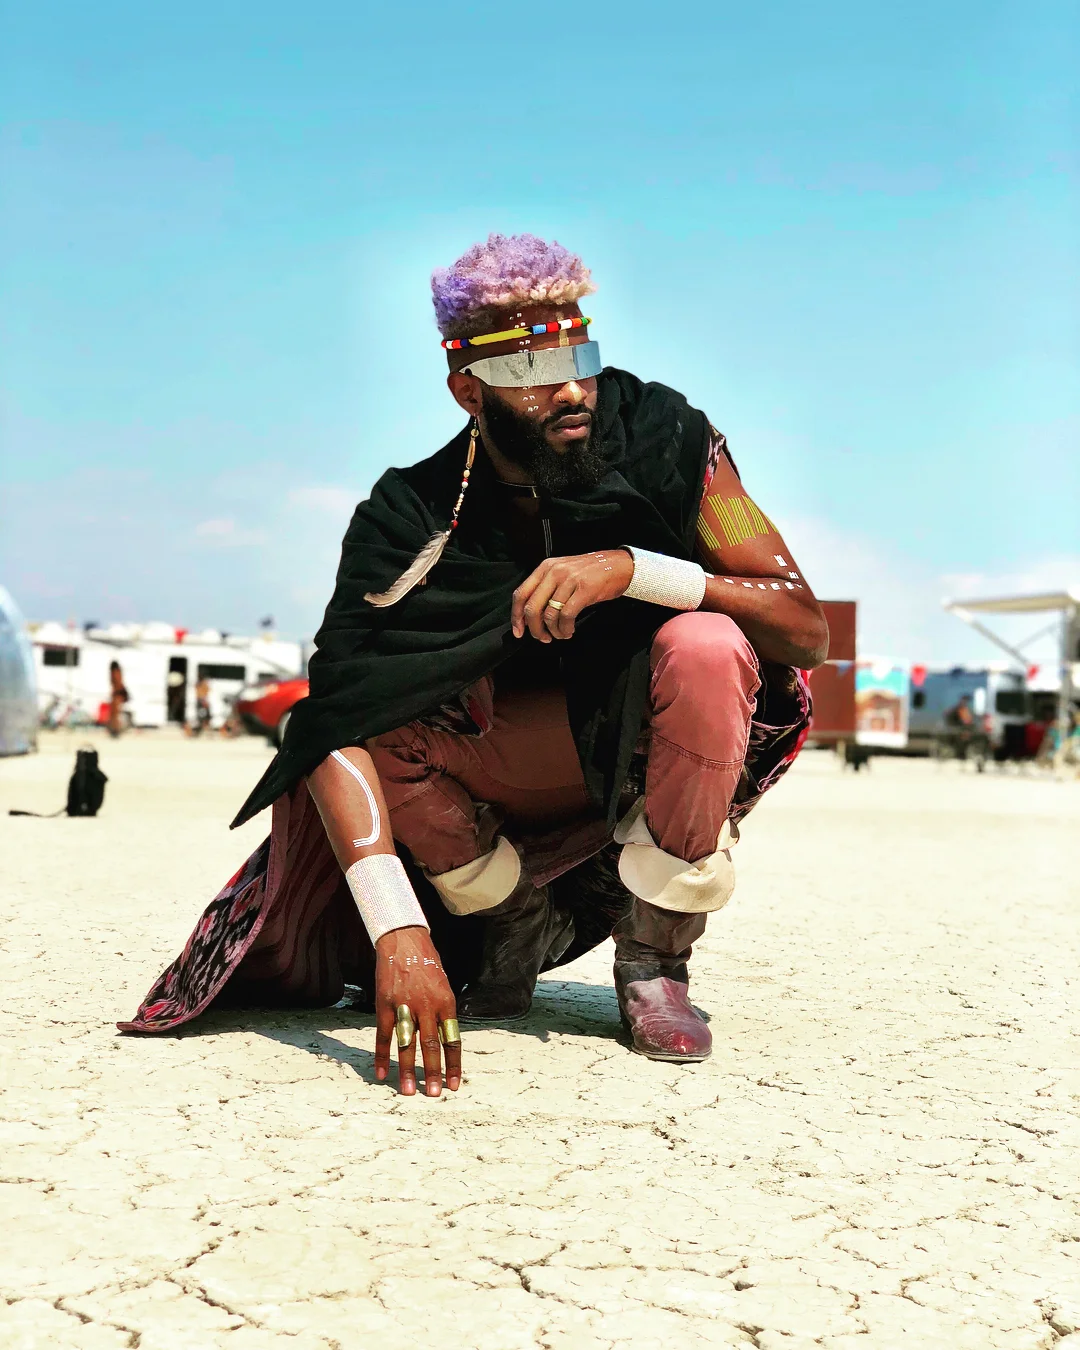 Полуголые тела, безумные костюмы и невероятные инсталляции фестиваля Burning Man-2018 - фото 400821